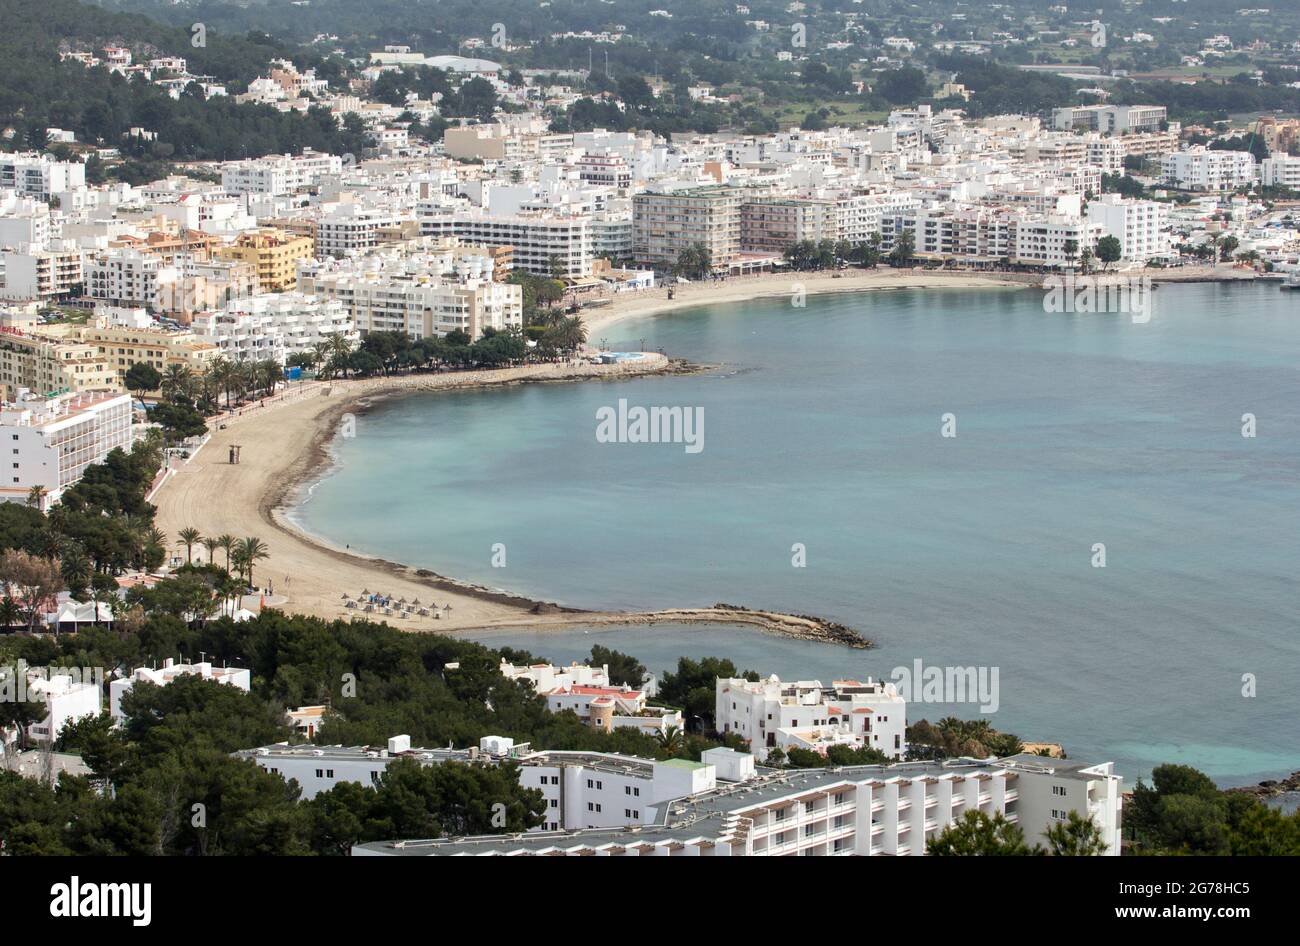 Vista desde el barrio de Siesta, Santa Eularia des Riu, Ibiza Foto de stock